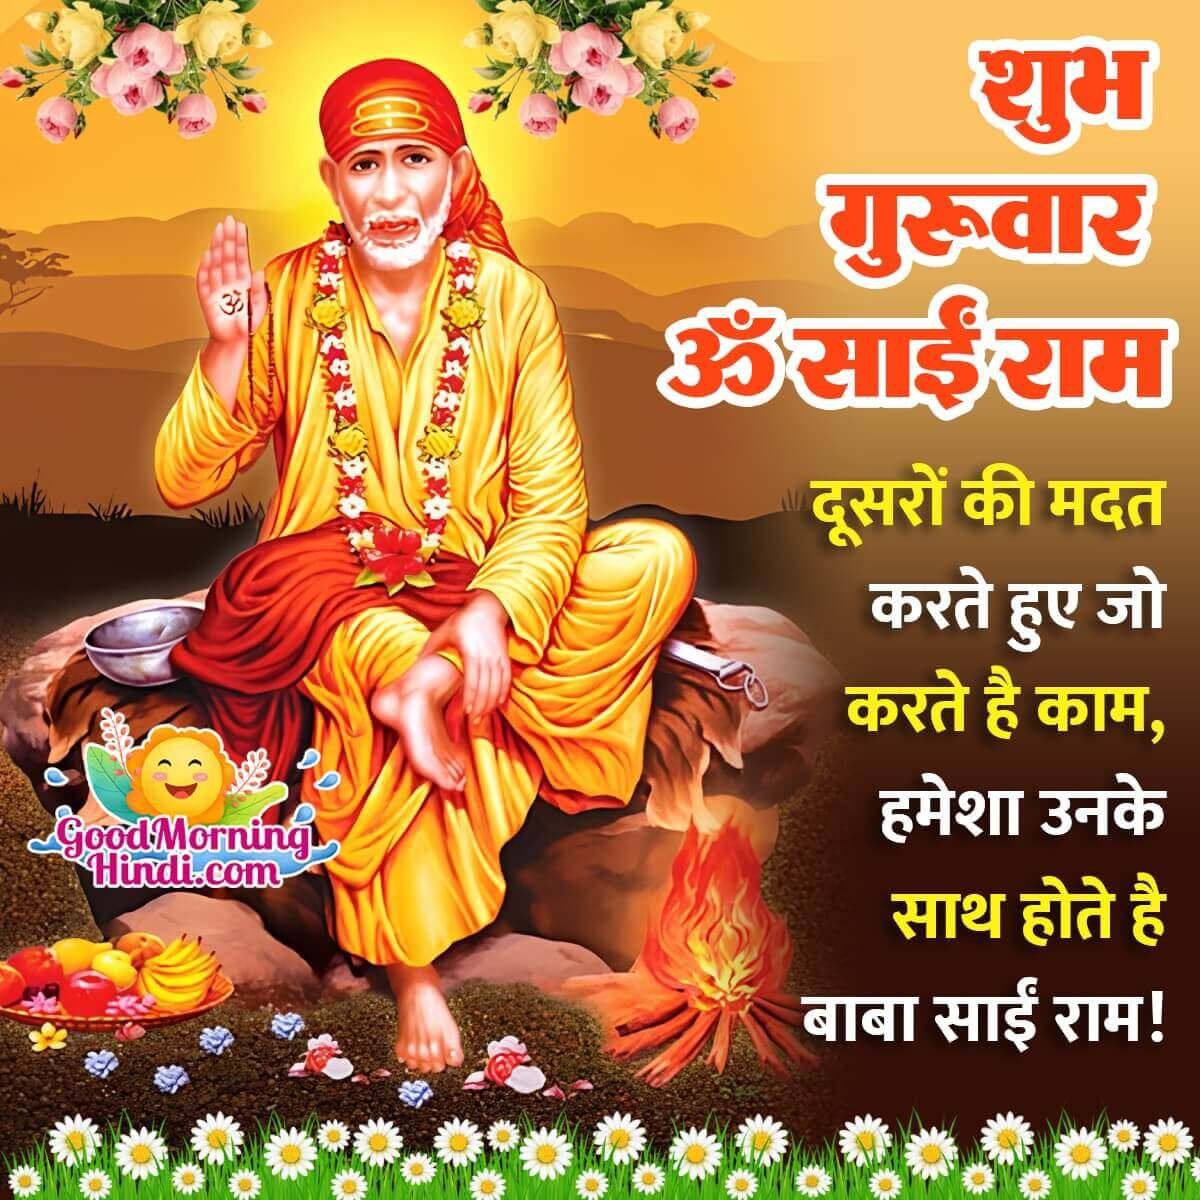 Sai Baba Thursday Images in Hindi